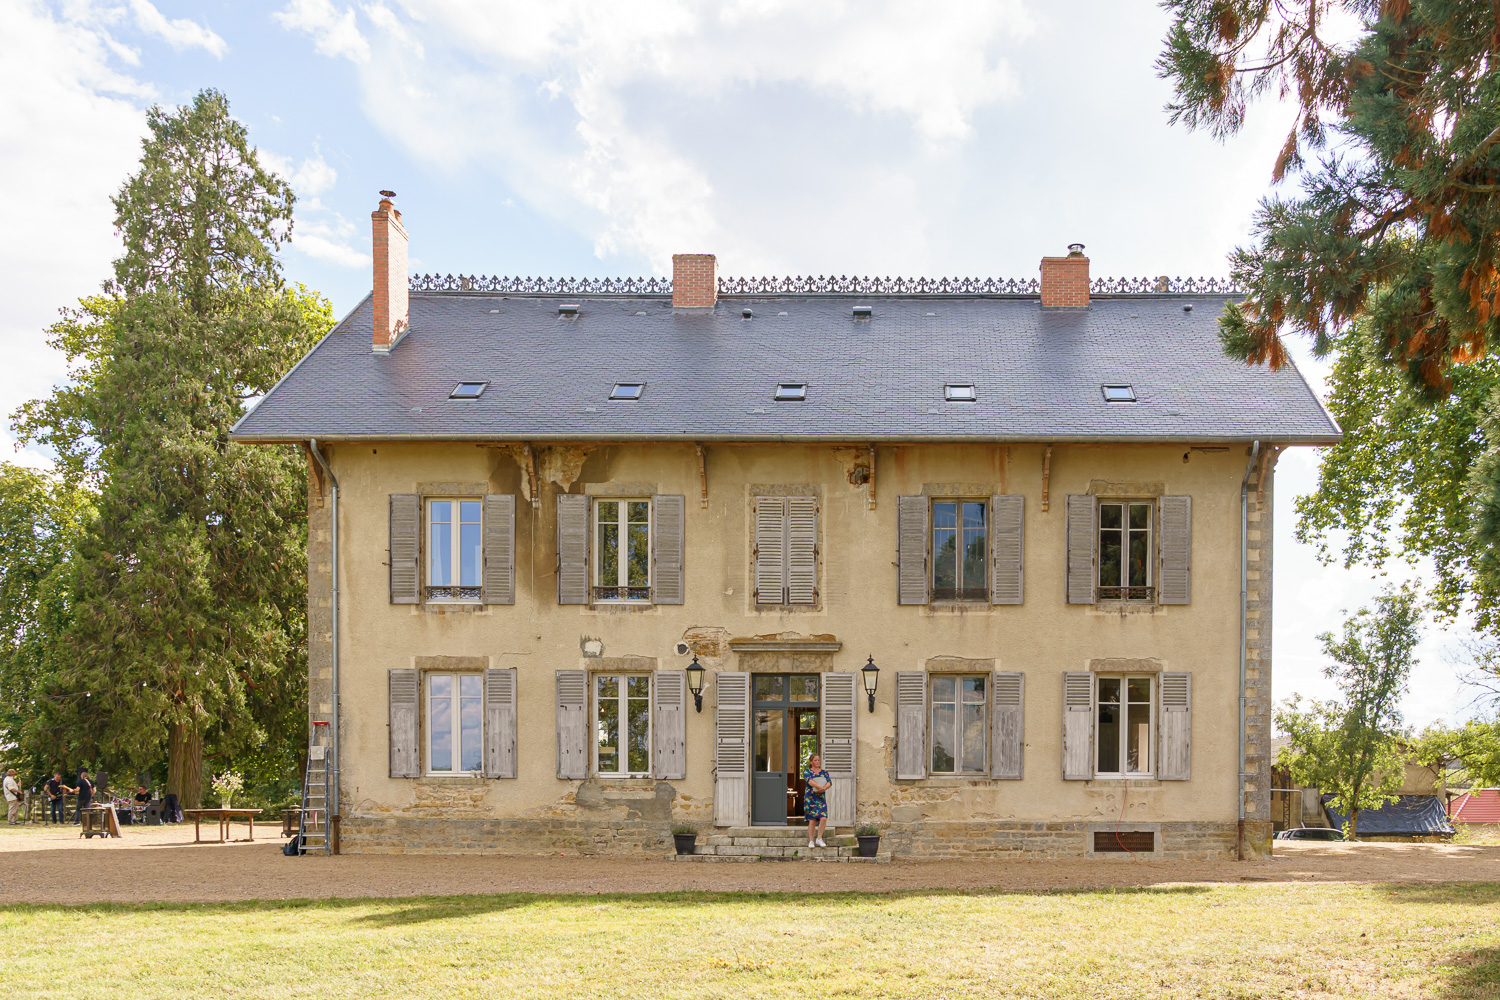 Chambres d'hotes et gite Domaine de Savigny. Frankrijk - ©GittaPolakk